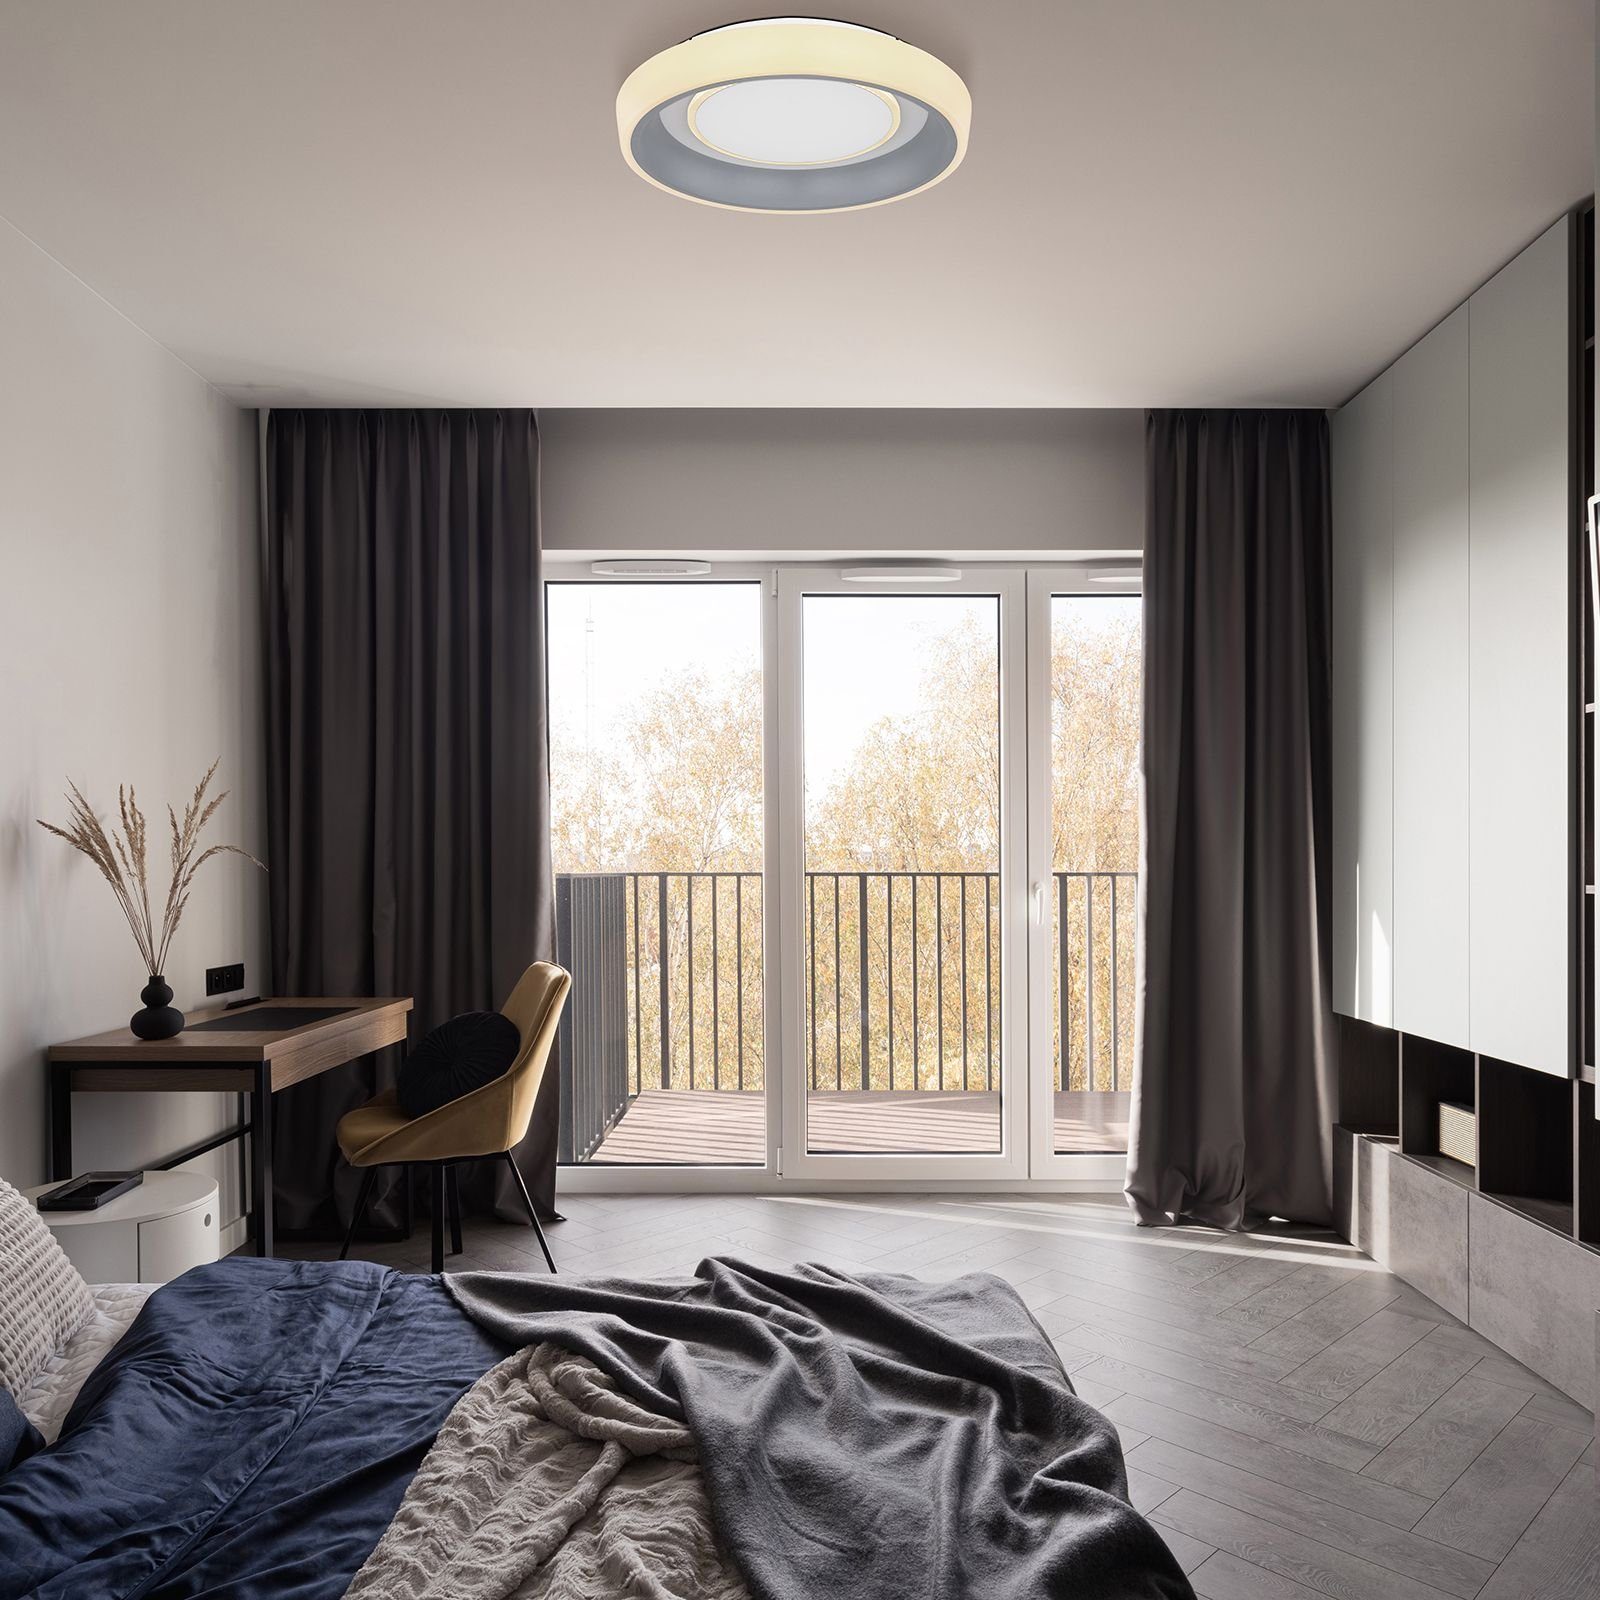 GLOBO Deckenleuchte Wohnzimmer Globo Dimmbar LED Fernbedienung Deckenleuchte Deckenlampe